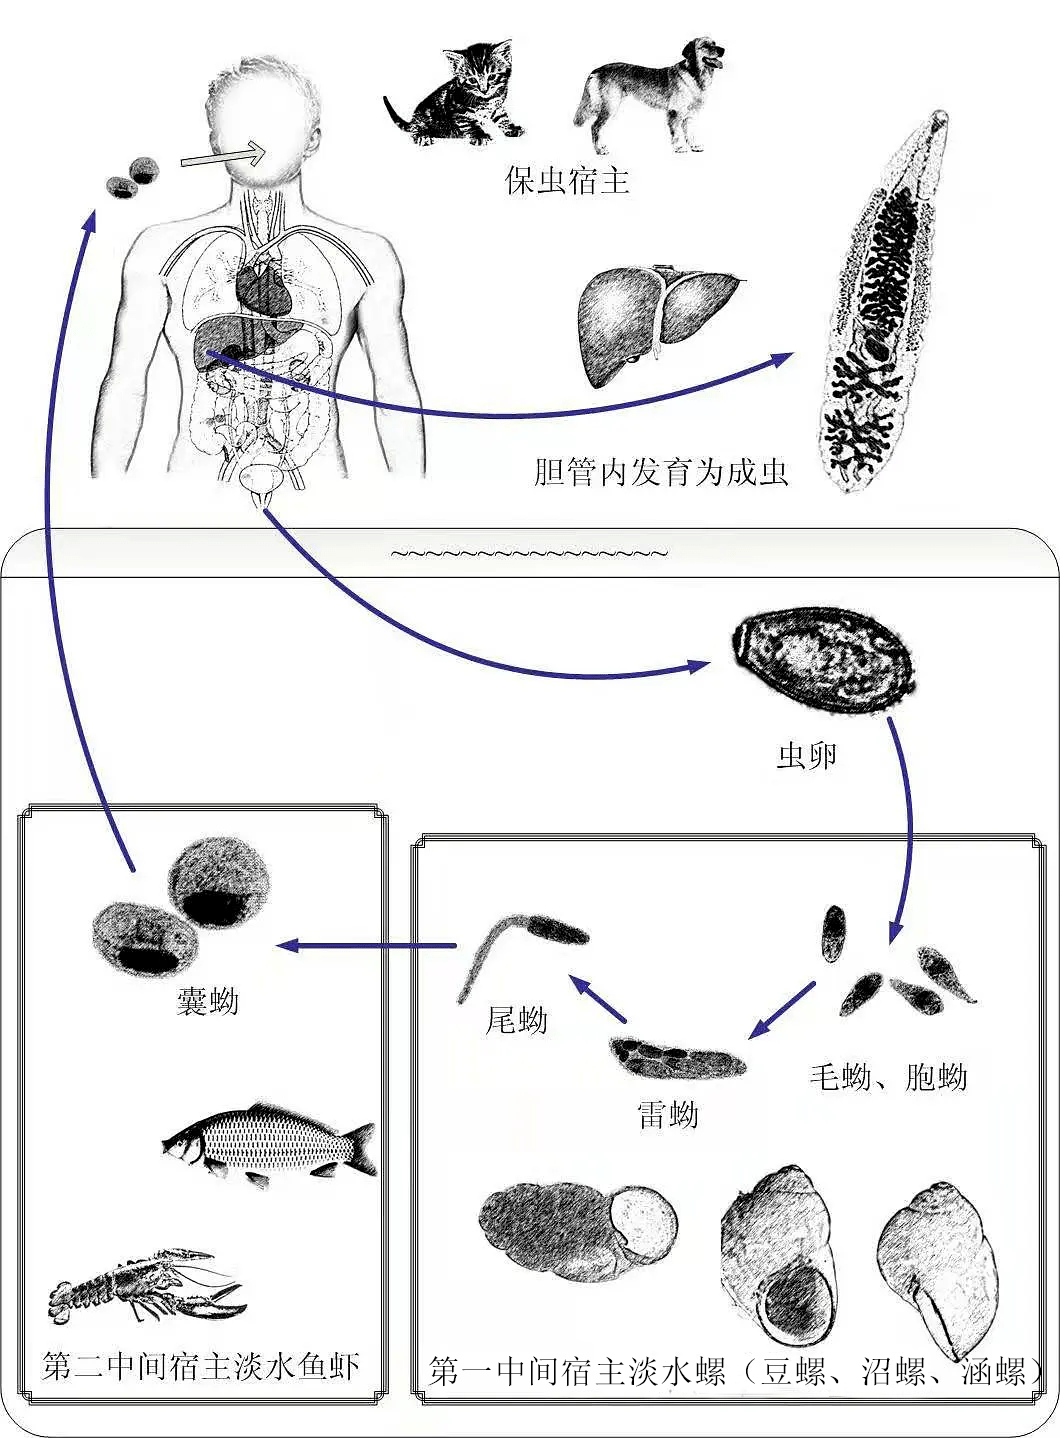 12.指环虫病-淡水鱼类寄生虫活体观察-图片